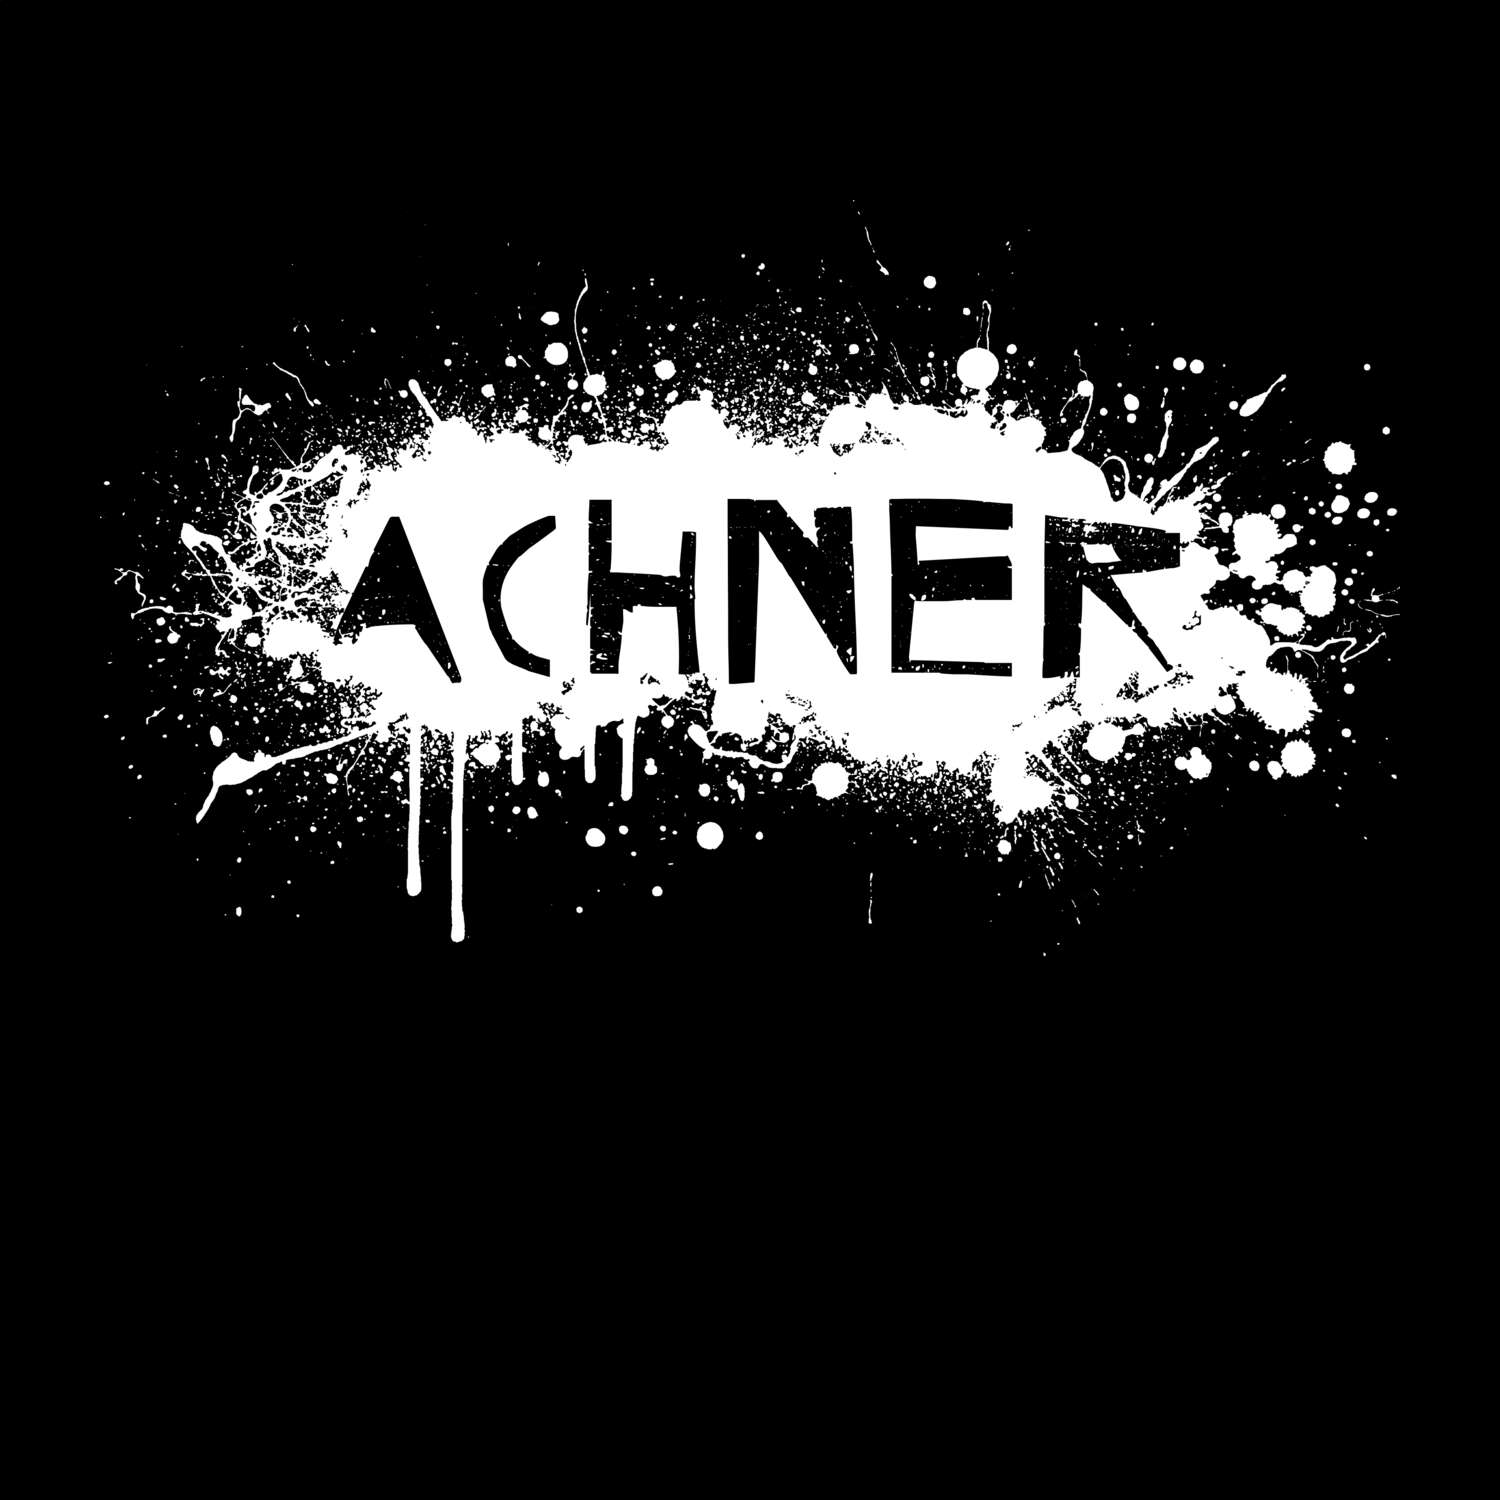 Achner T-Shirt »Paint Splash Punk«